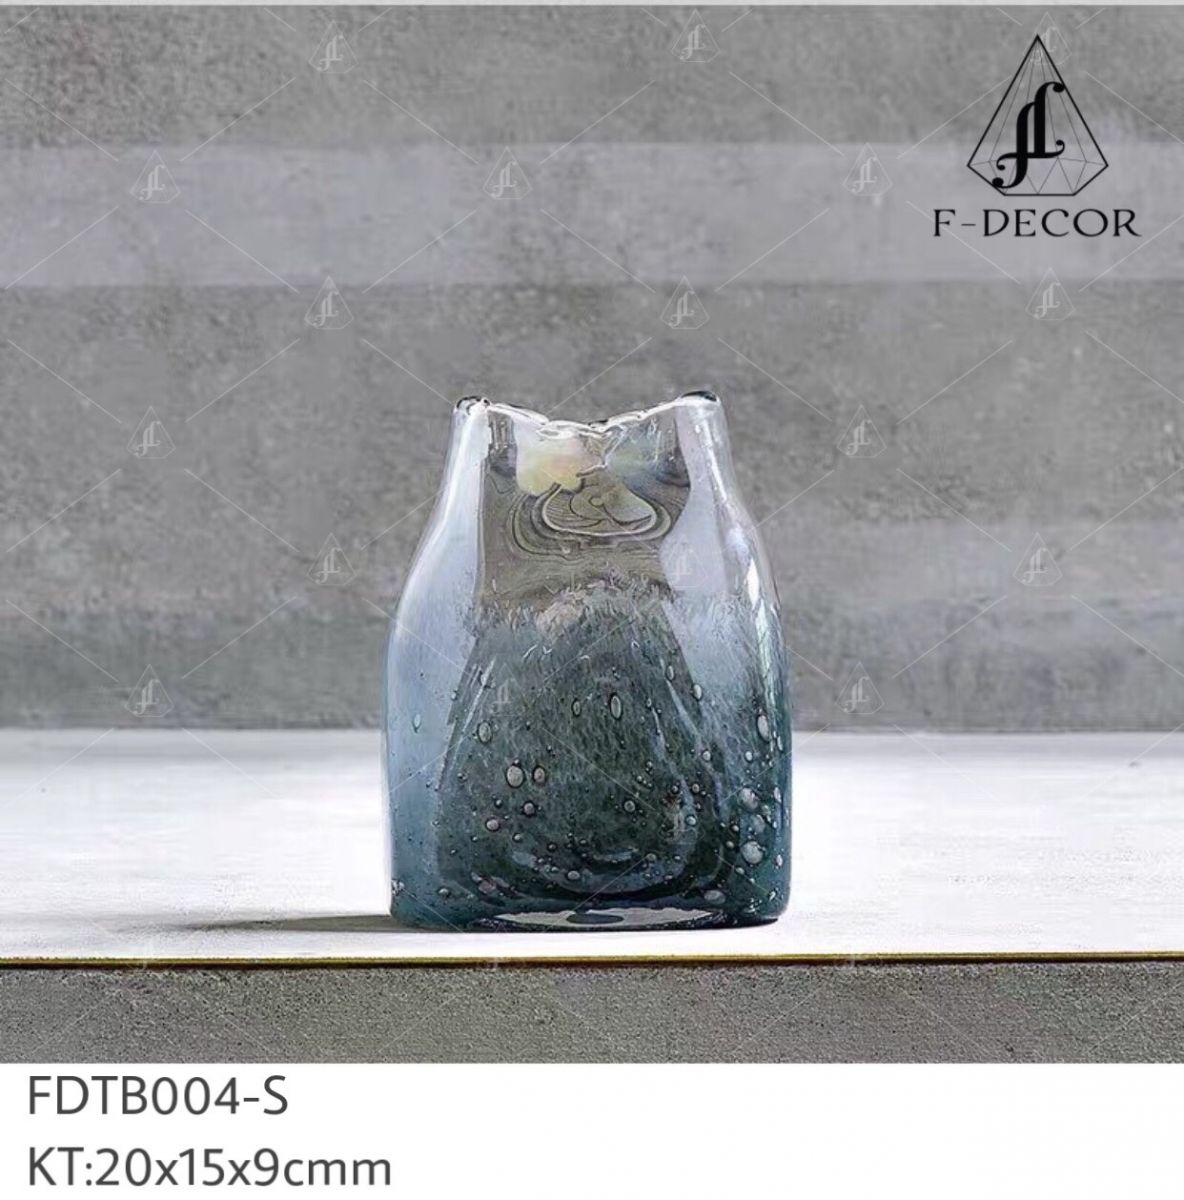 Bình hoa decor - FDTB004-S